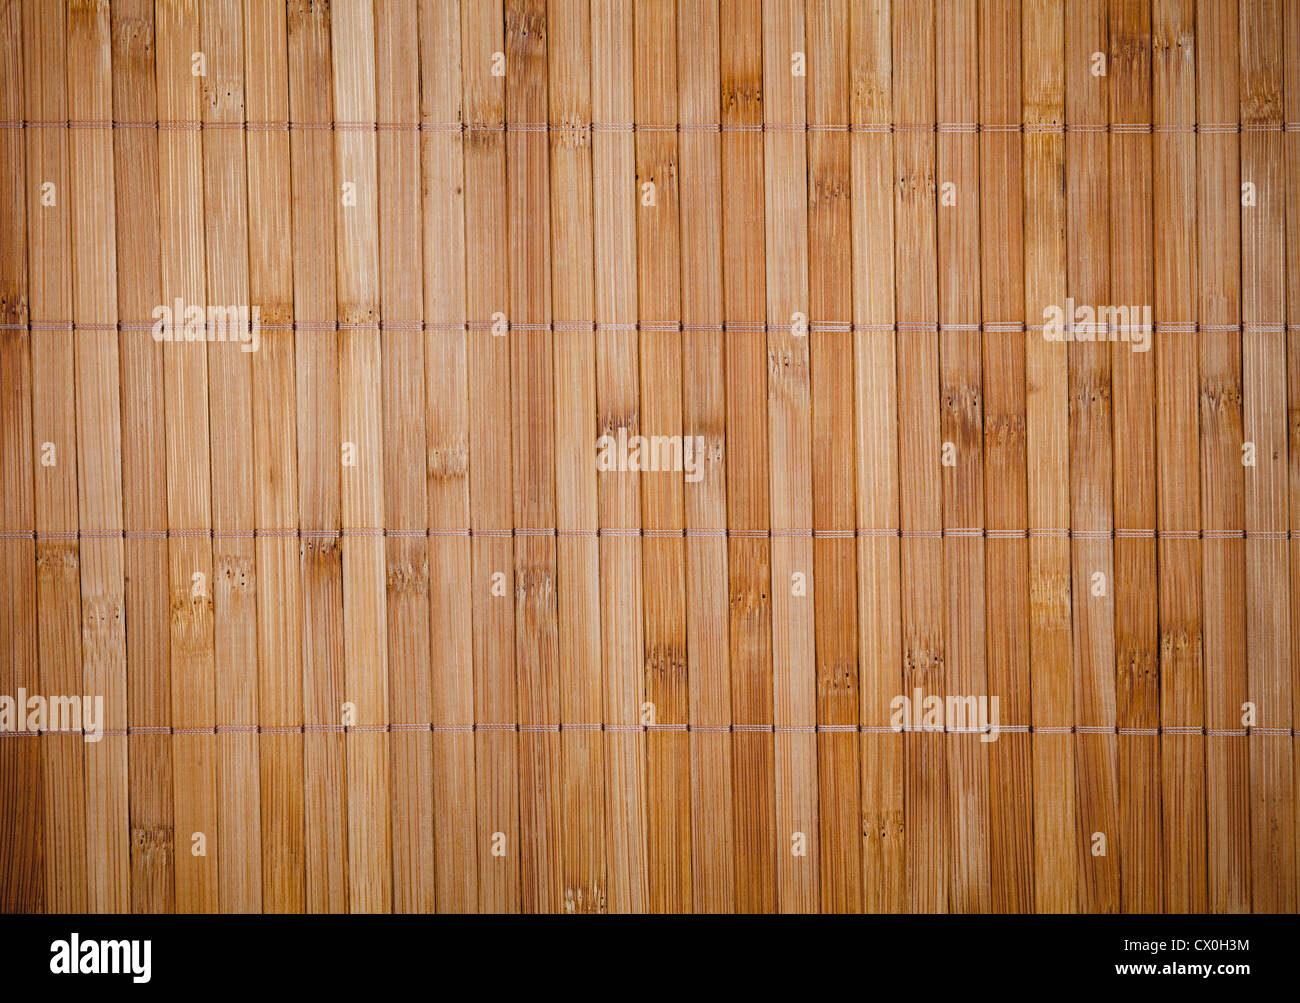 Texture napperon de bambou Banque D'Images